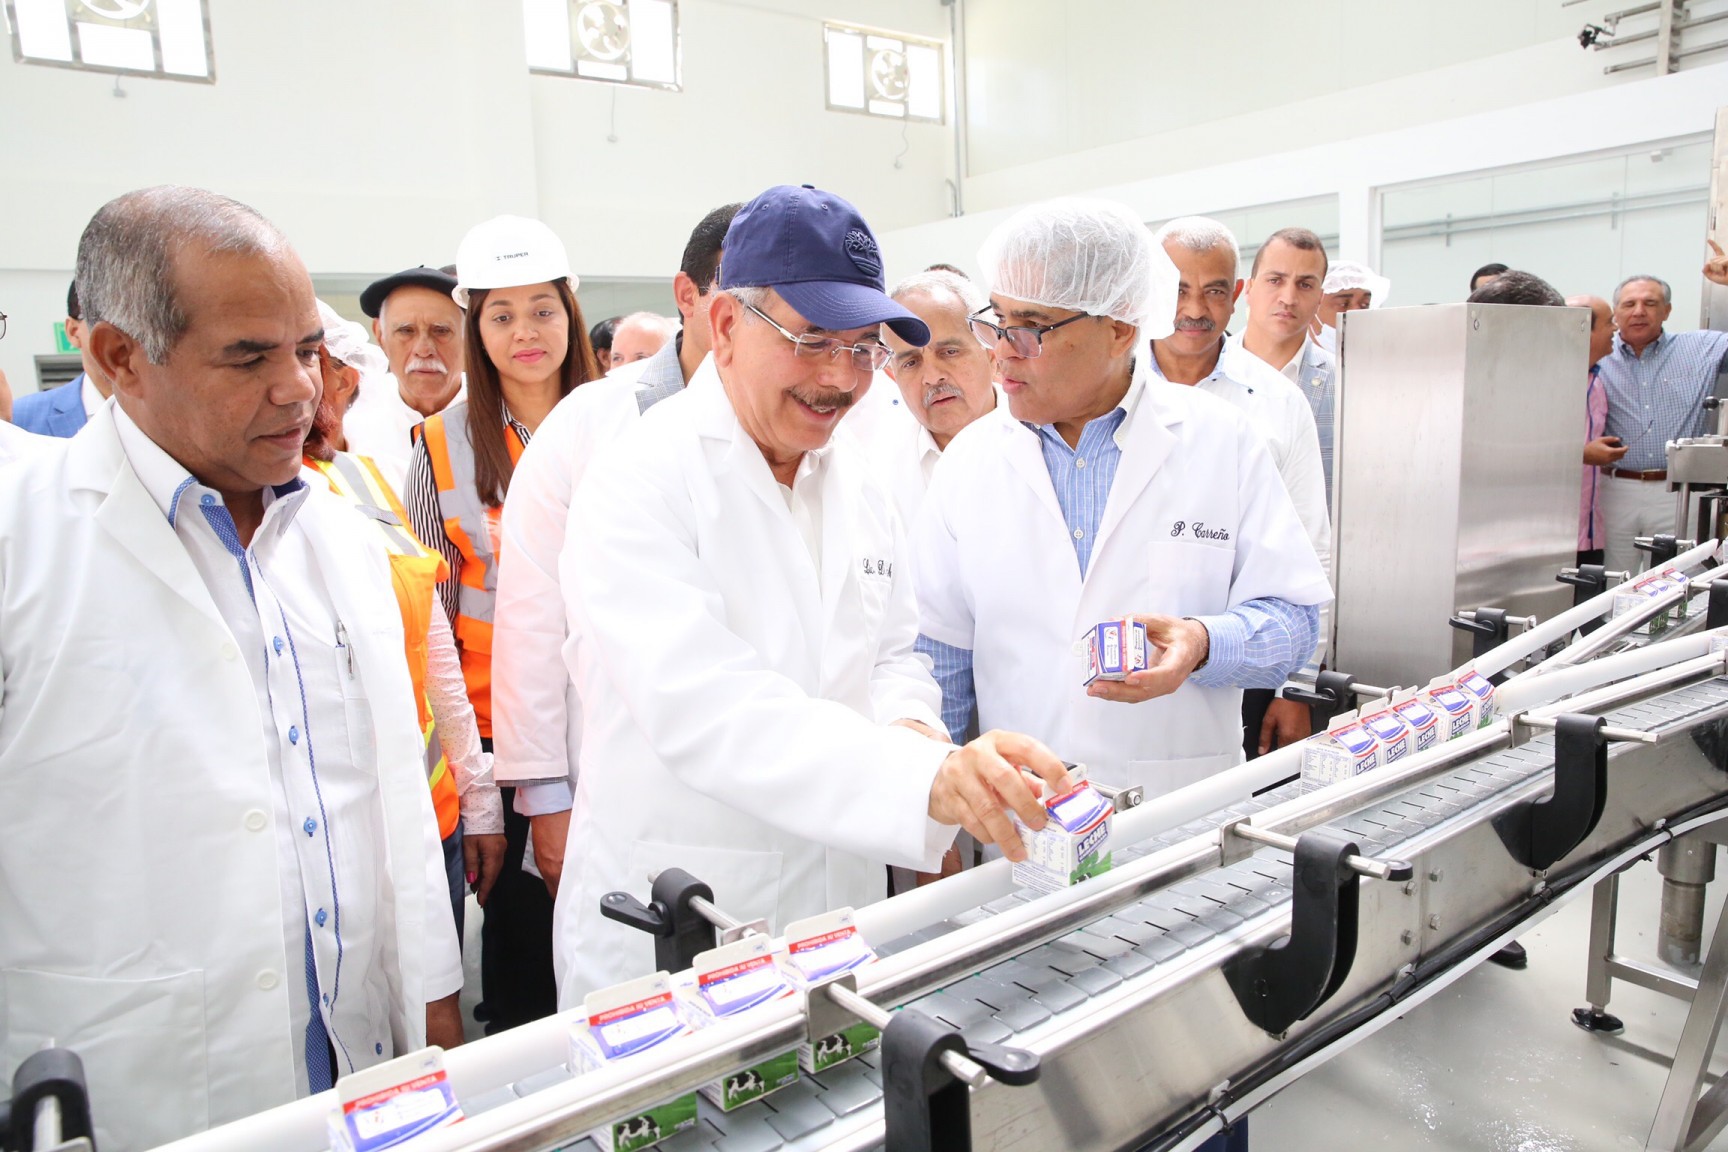 REPÚBLICA DOMINICANA: Danilo Medina entrega a ganaderos de Hato Mayor procesadora de lácteos, frutas y néctares, acordada en Visita Sorpresa